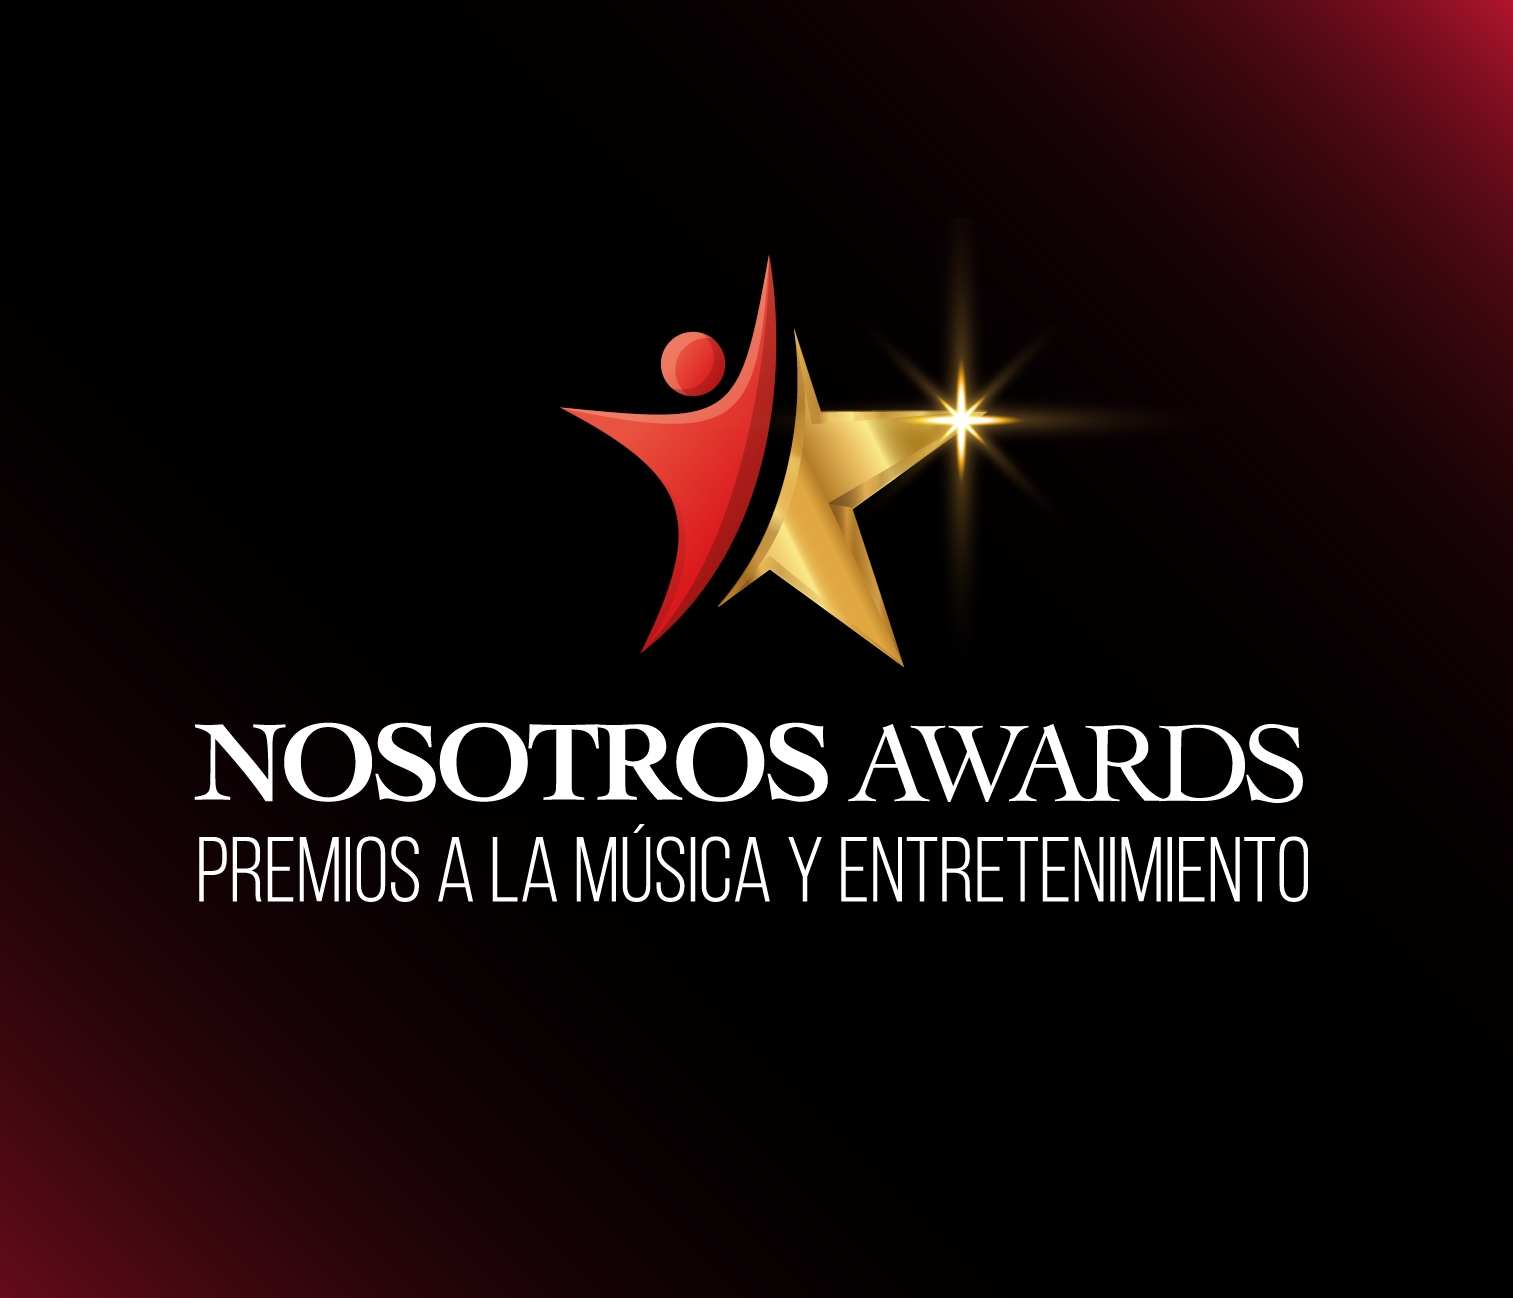 Nosotros Awards Poster Image